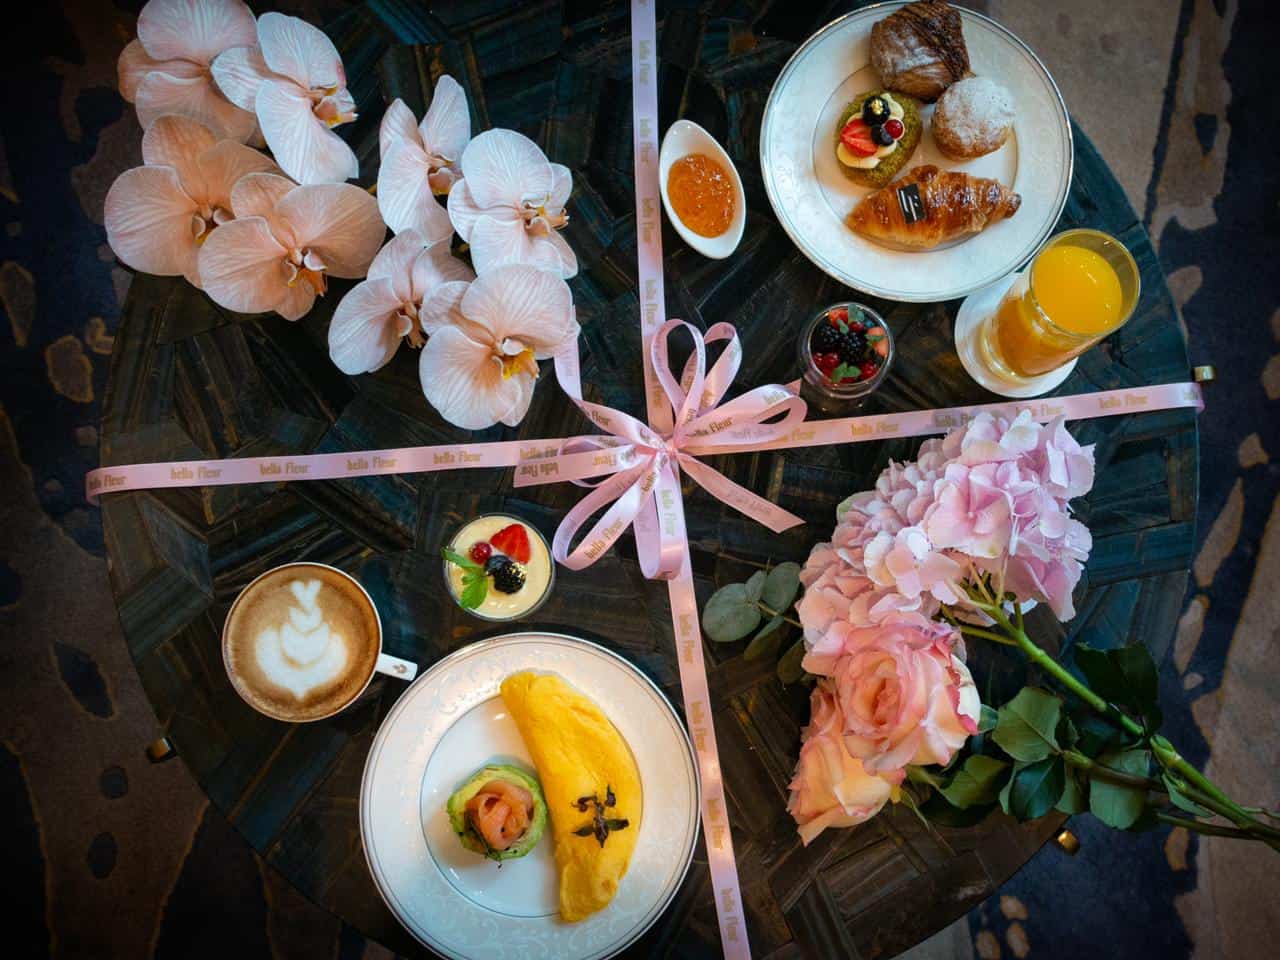 إفطار مع الأزهار وتجربة من المرح اللذيذ في فندق شانغريلا دبي